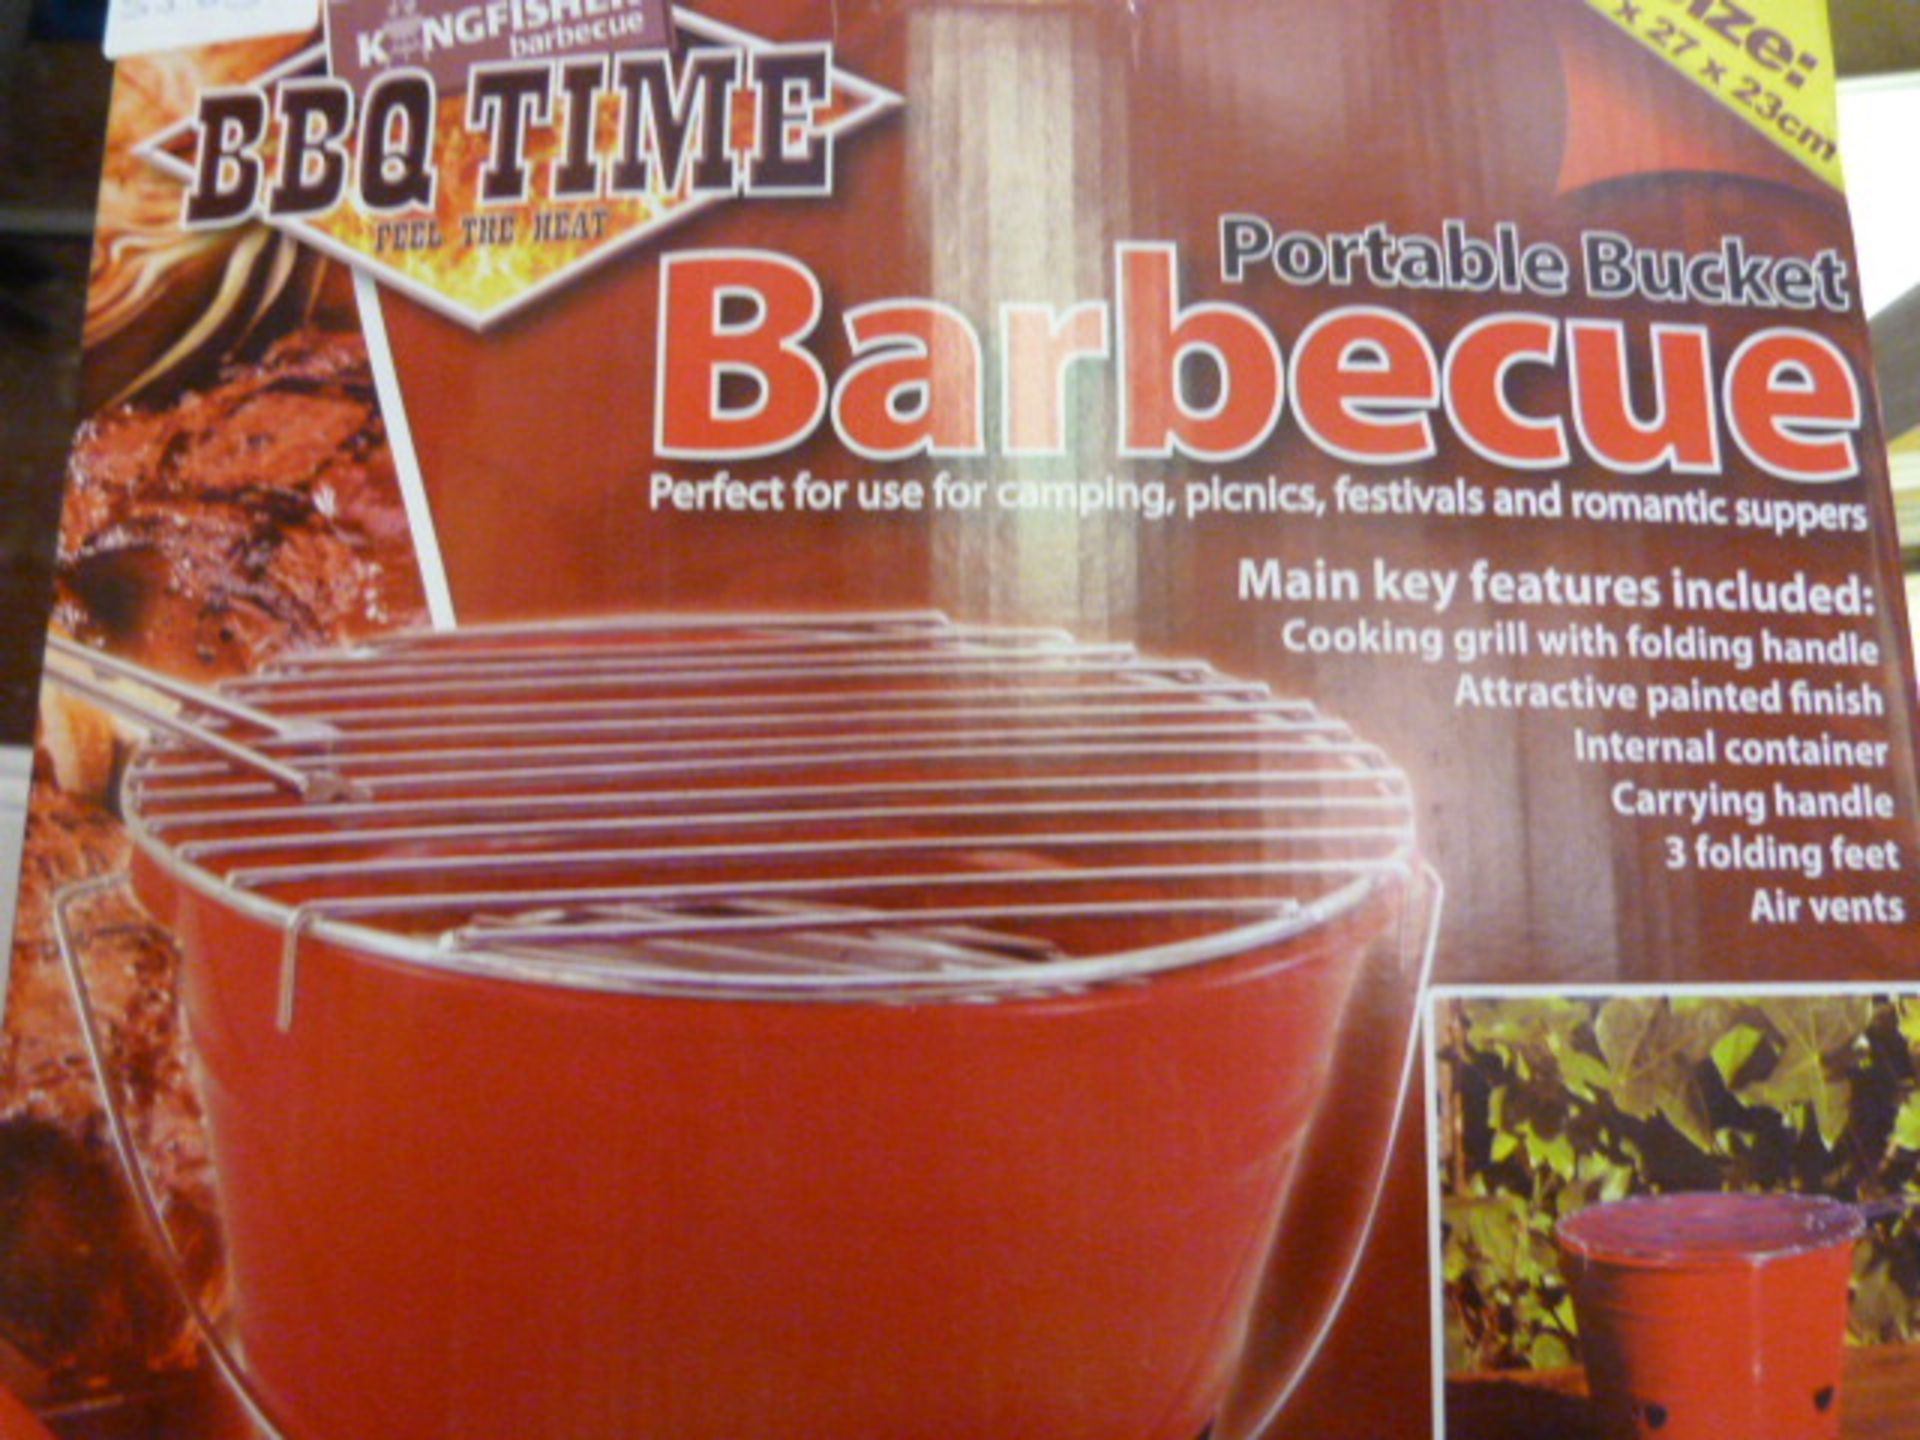 *Portable Bucket Barbecue